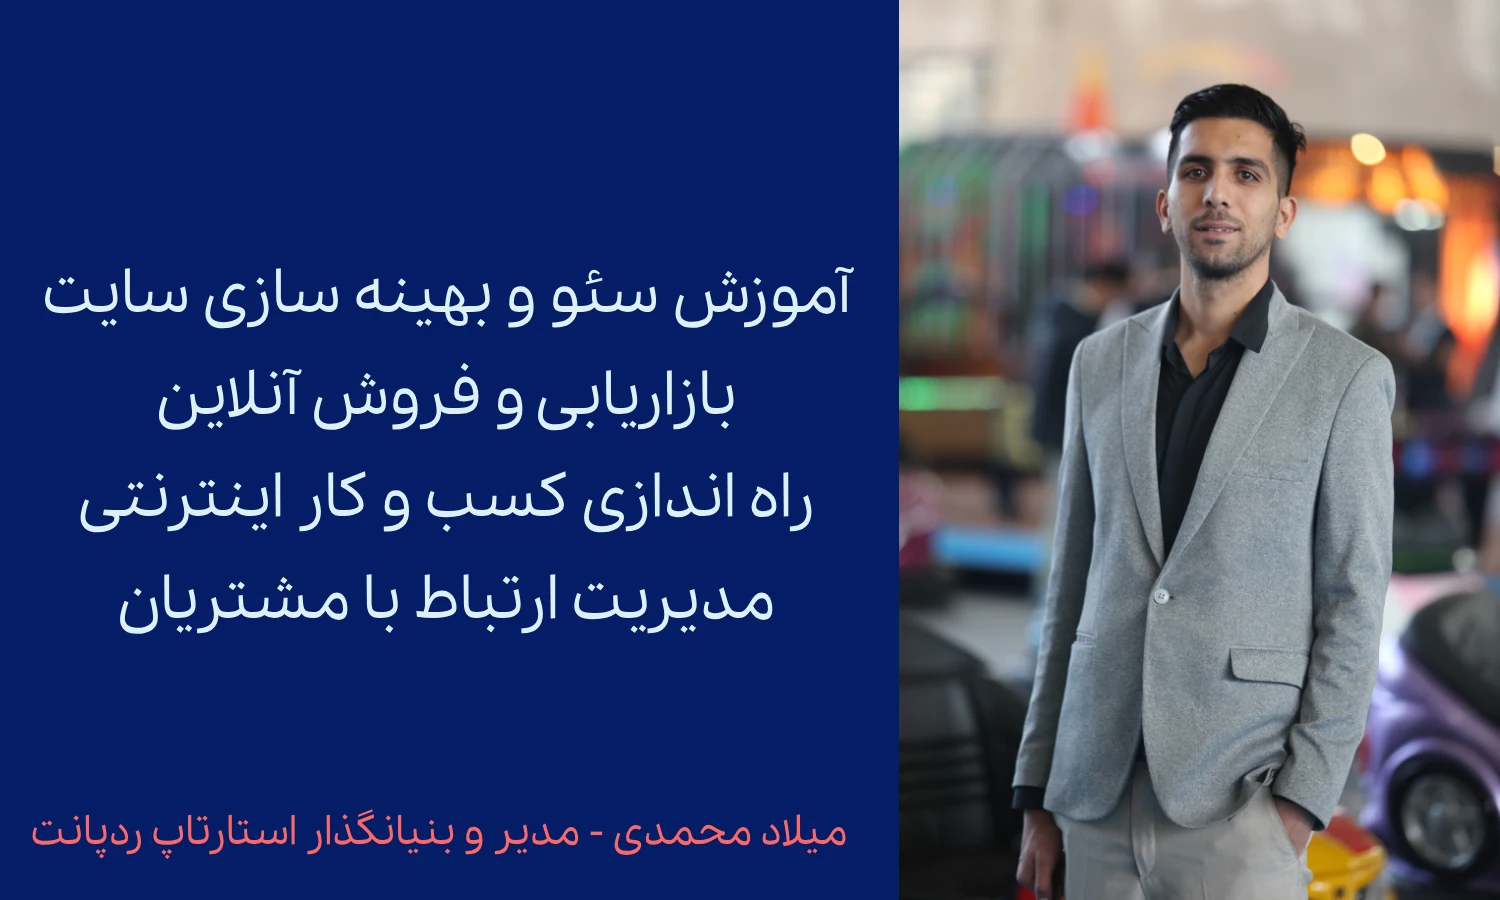 میلاد محمدی - مدیر و بنیانگذار استارتاپ ردپانت